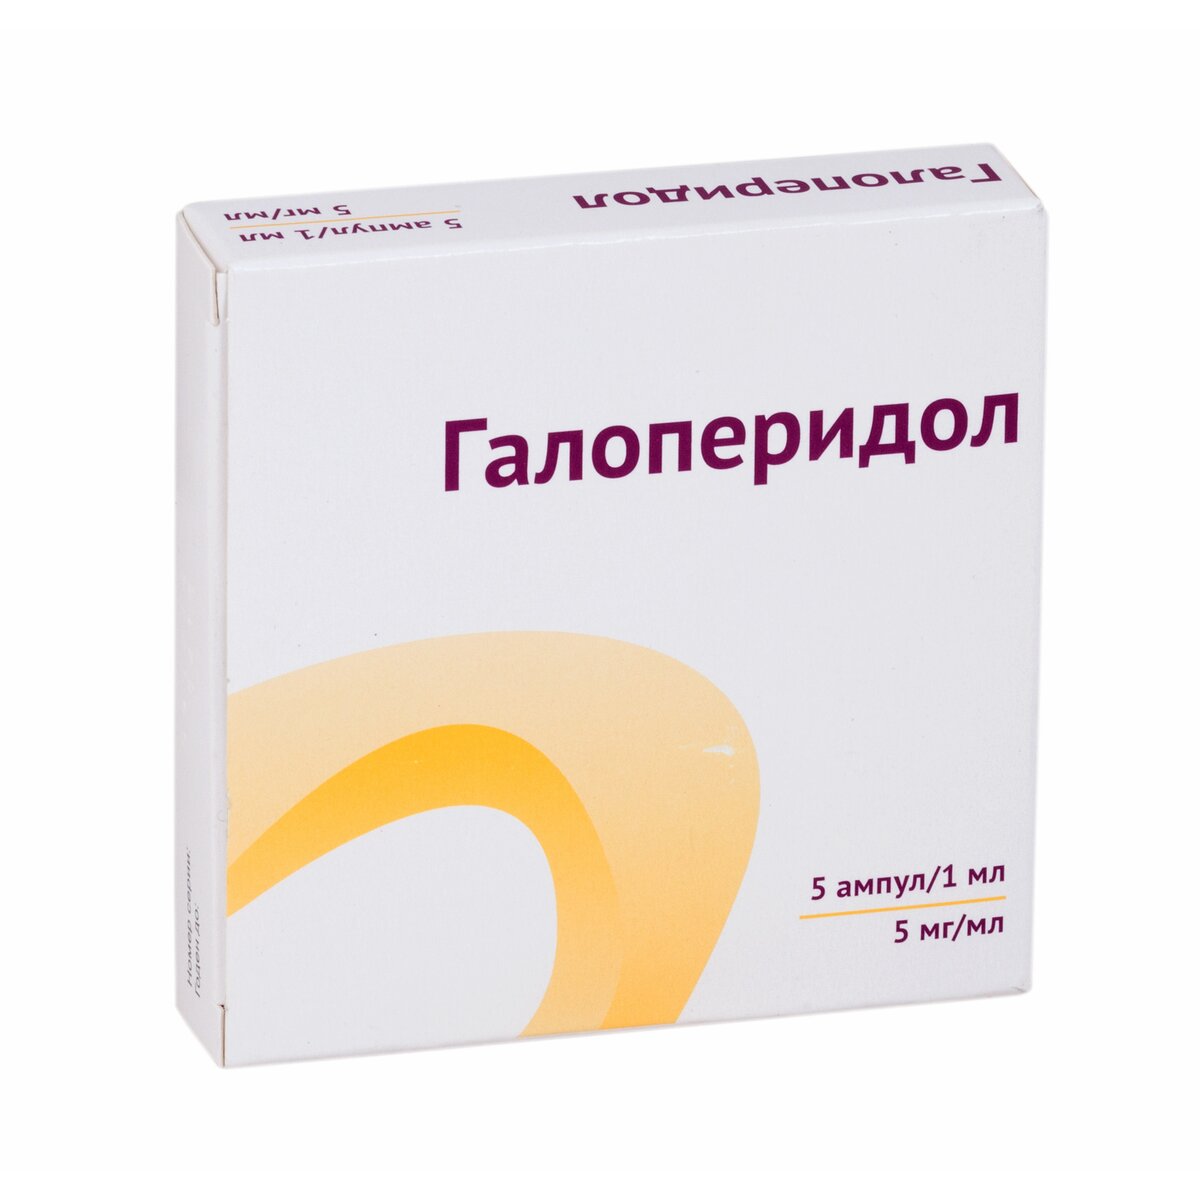 Галоперидол раствор для внутривенного и внутримышечного введения 5 мг/мл ампулы 1 мл 5 шт.